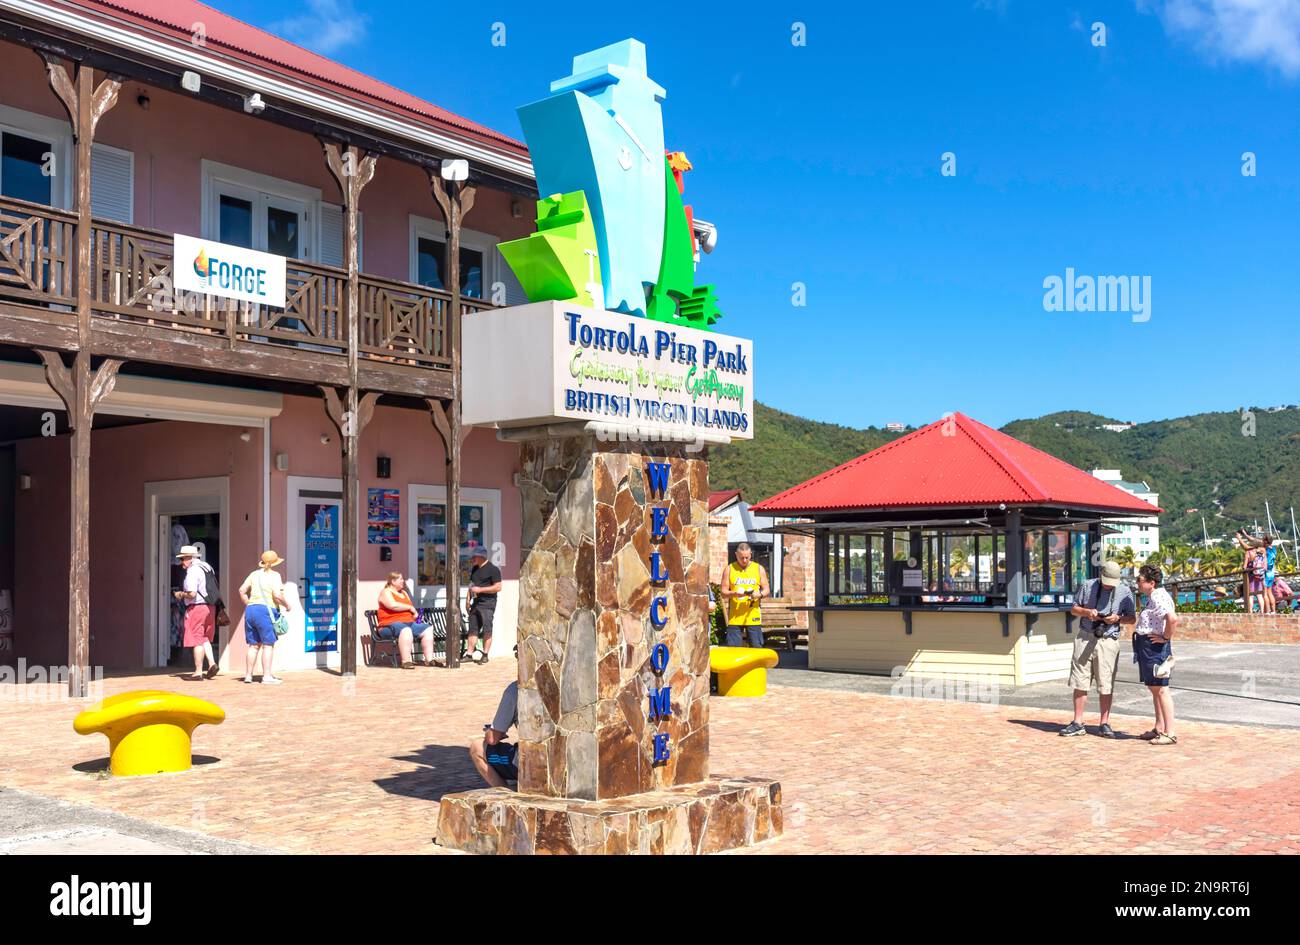 Panneau d'entrée du parc Tortola Pier, Road Town, Tortola, les îles Vierges britanniques (BVI), les Petites Antilles, les Caraïbes Banque D'Images